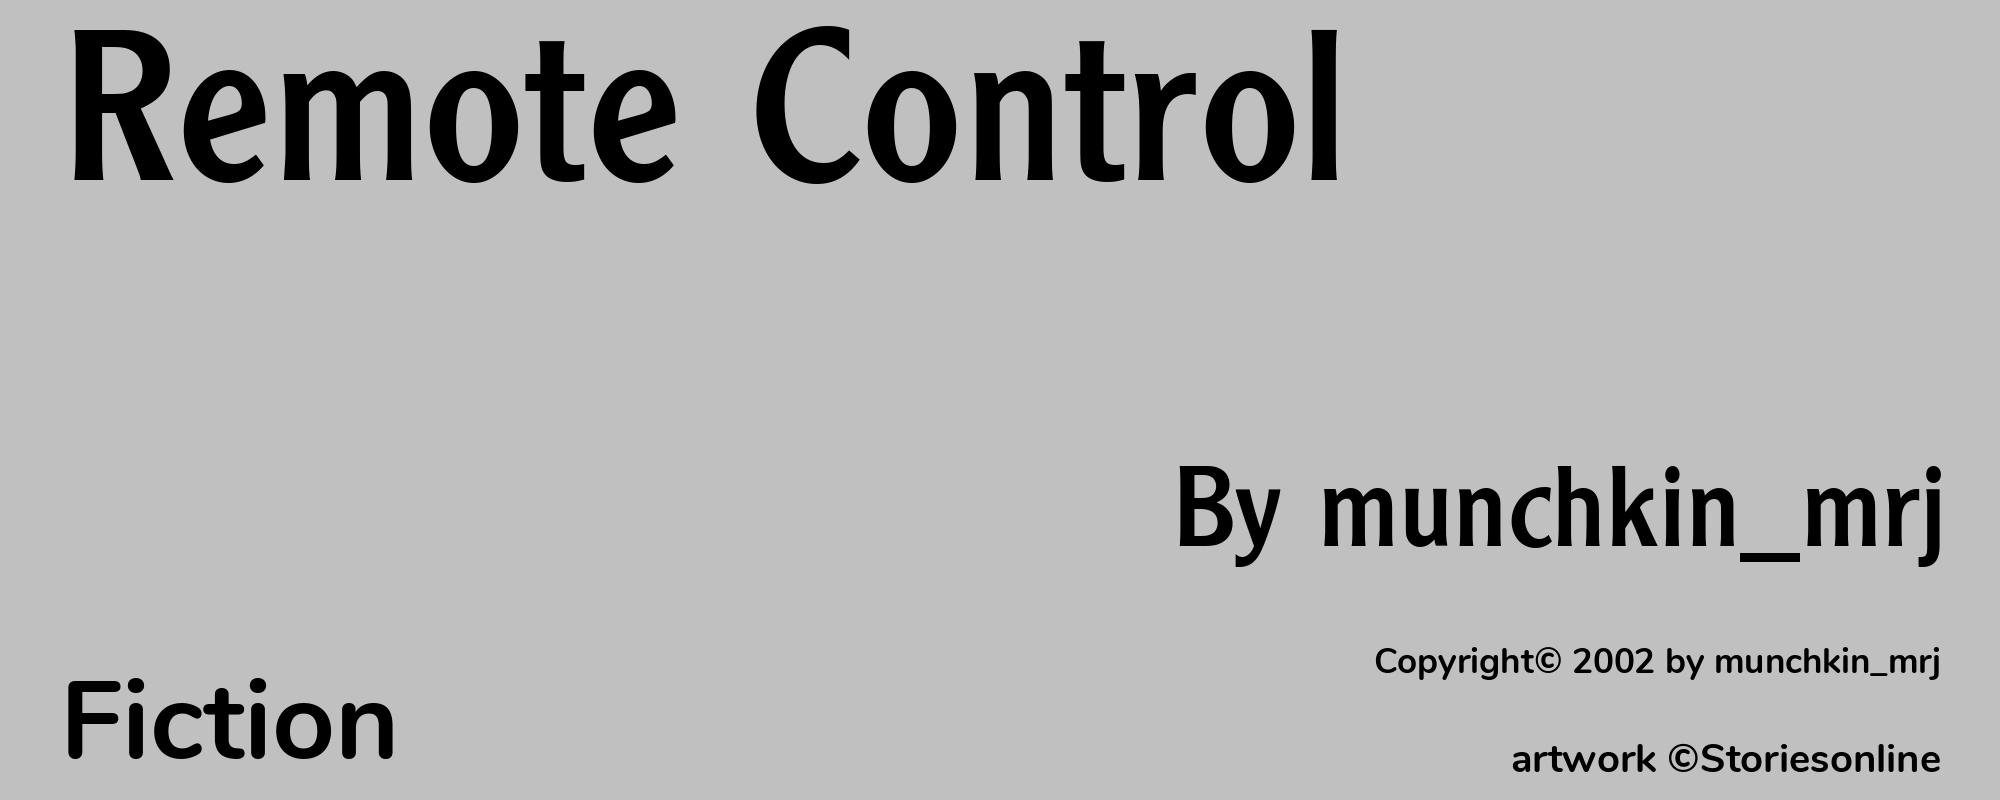 Remote Control - Cover